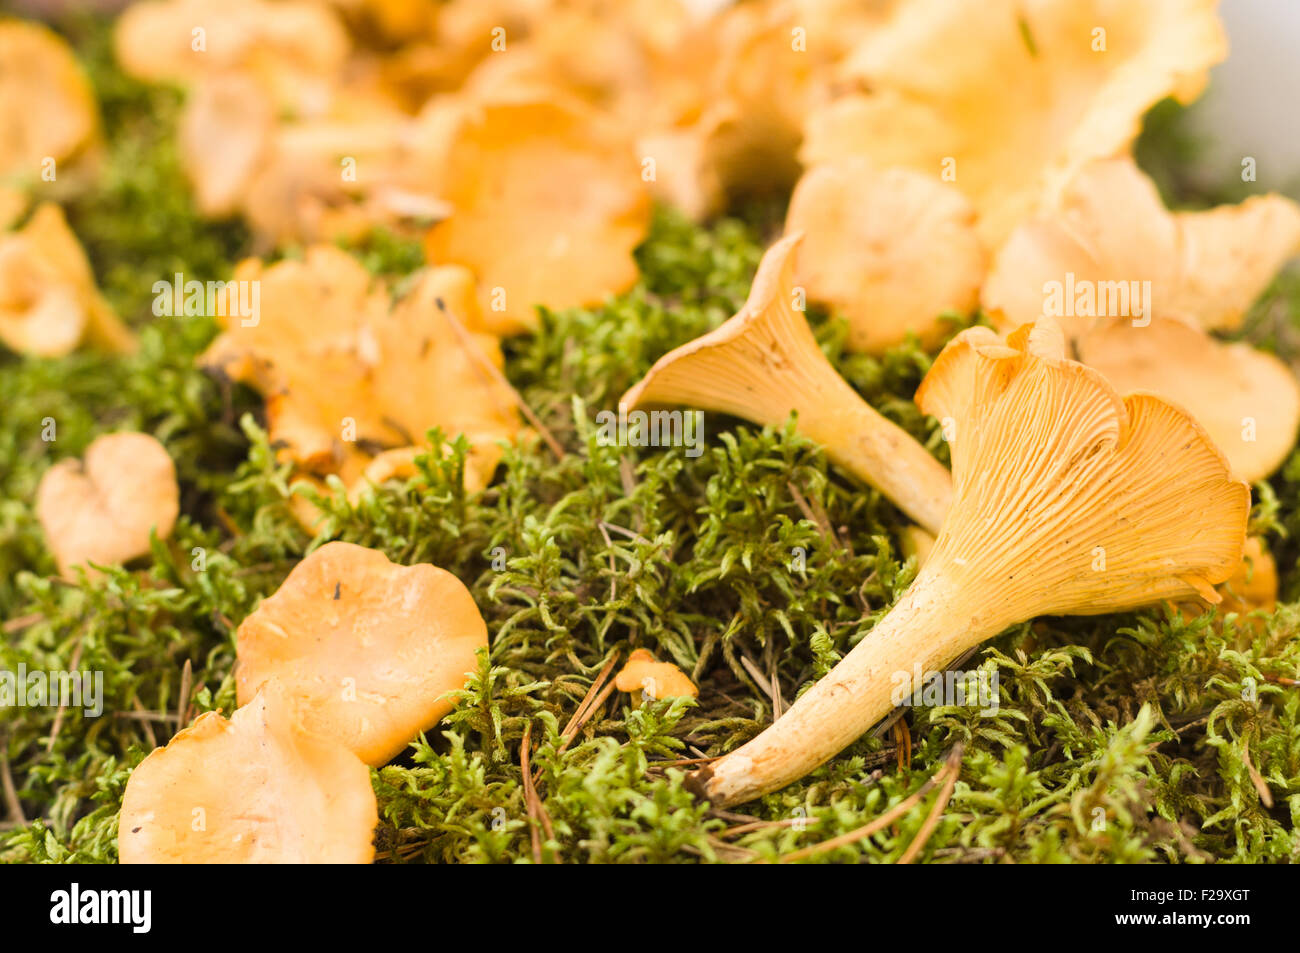 Golden chanterelle (Cantharellus cibarius) or girolle mushrooms, closeup view Stock Photo